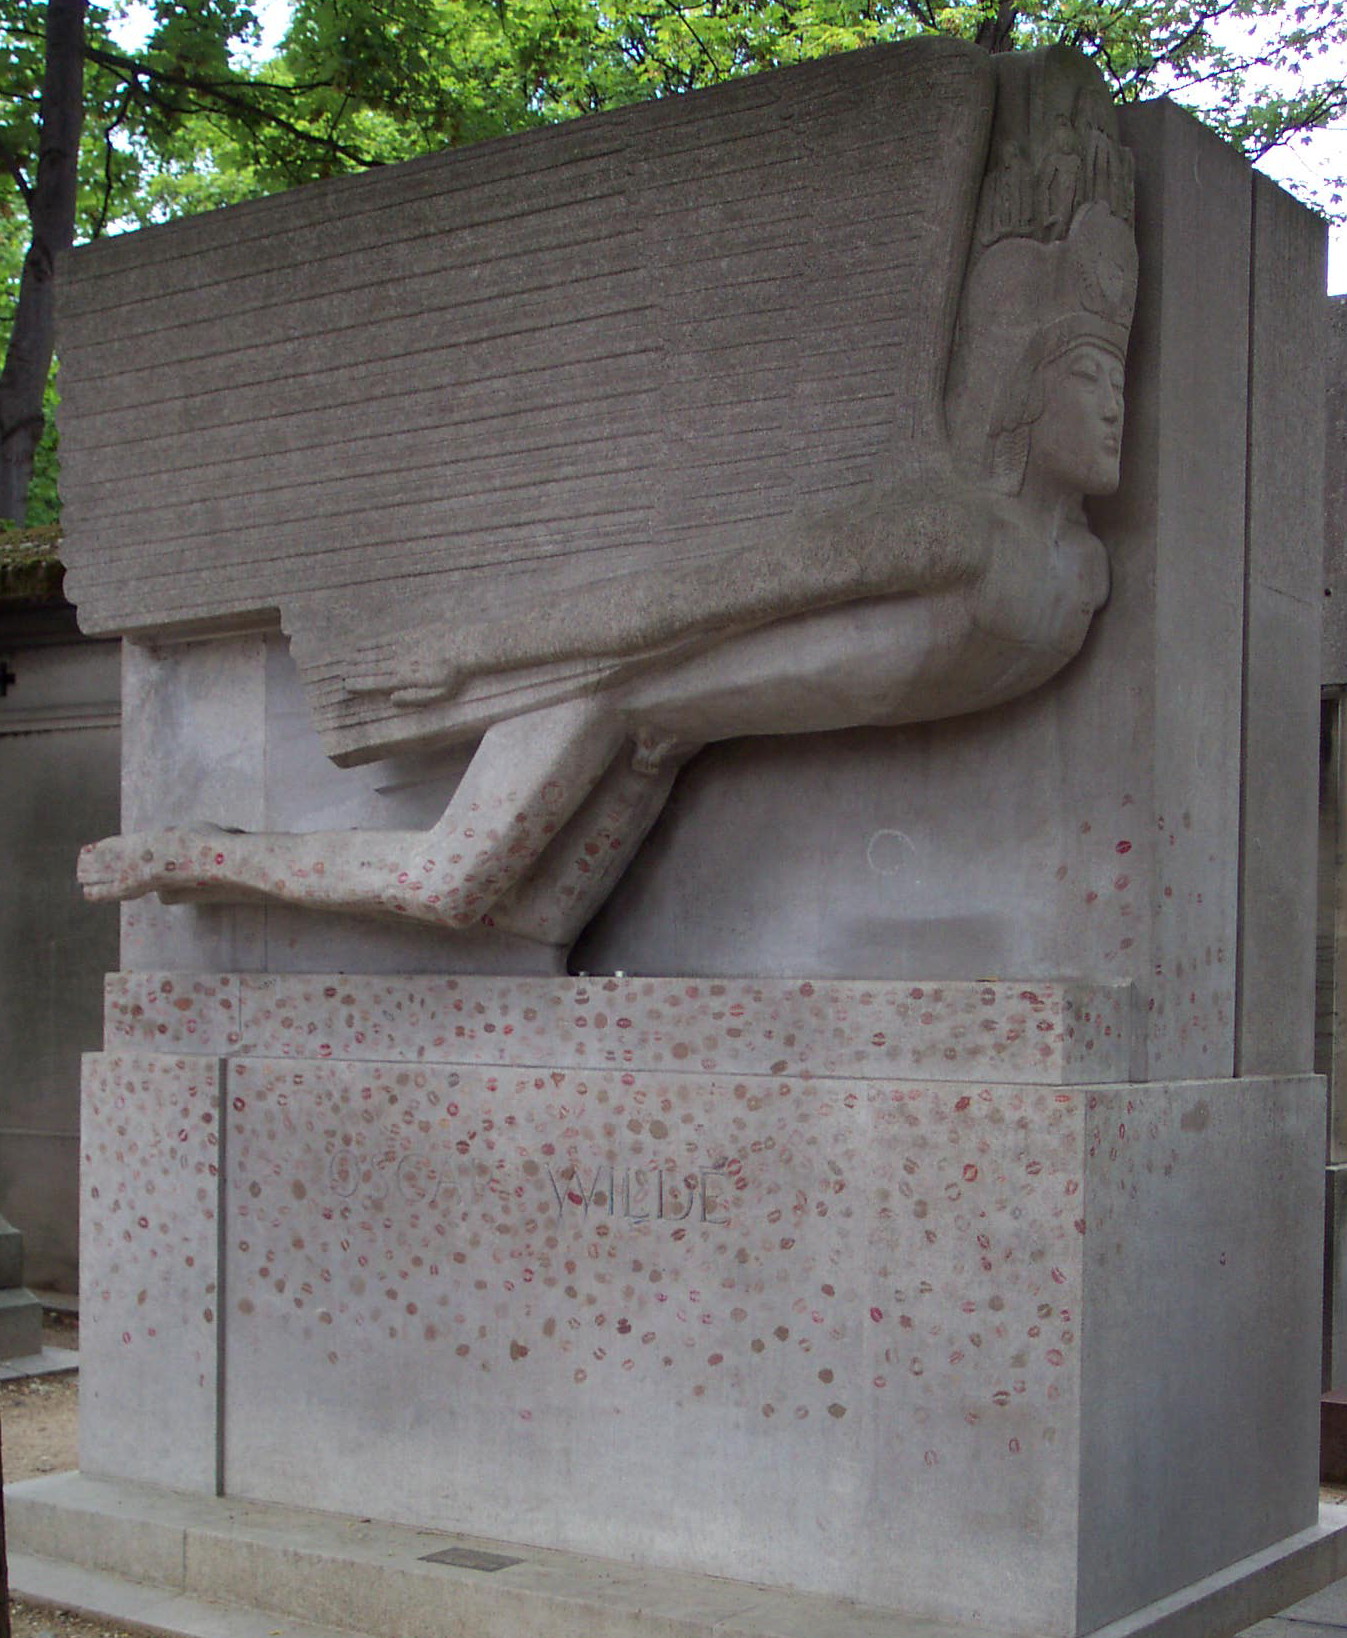 Oscar Wilde's grave